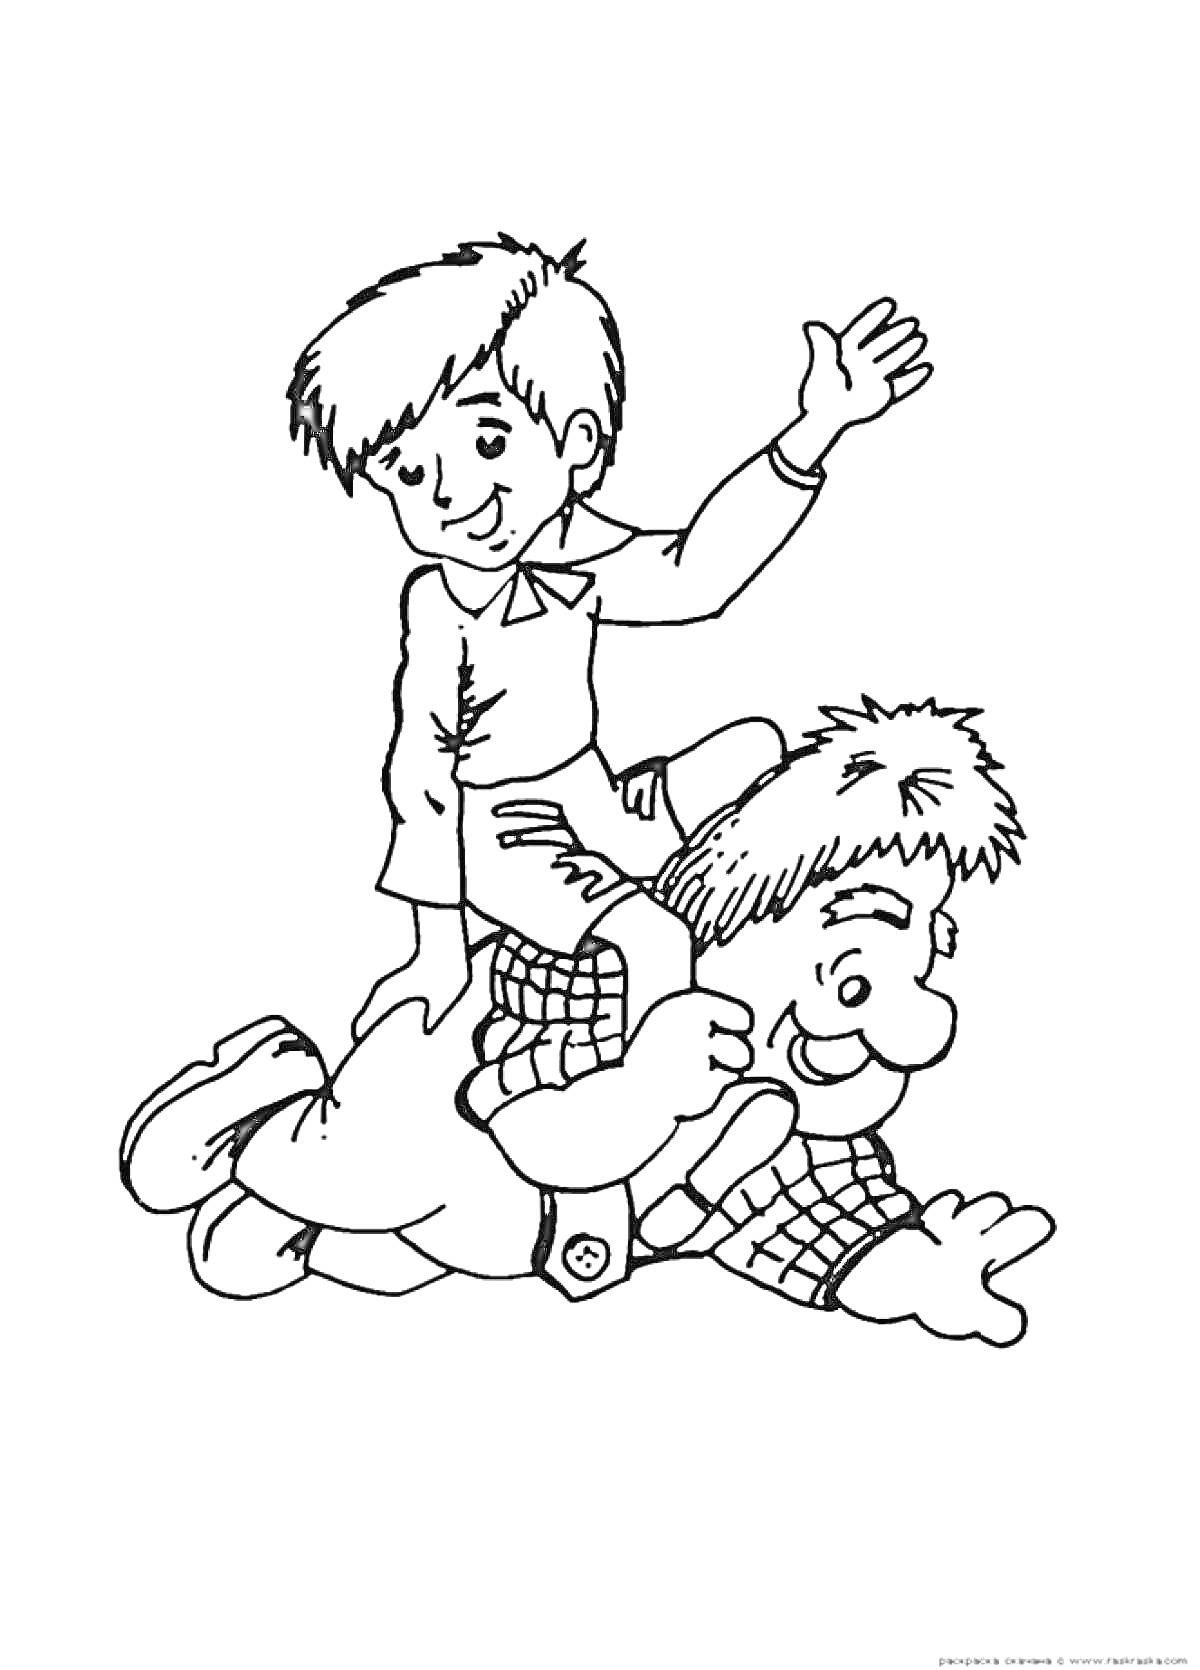 Раскраска Мальчик на спине у Карлсона, мальчик машет рукой